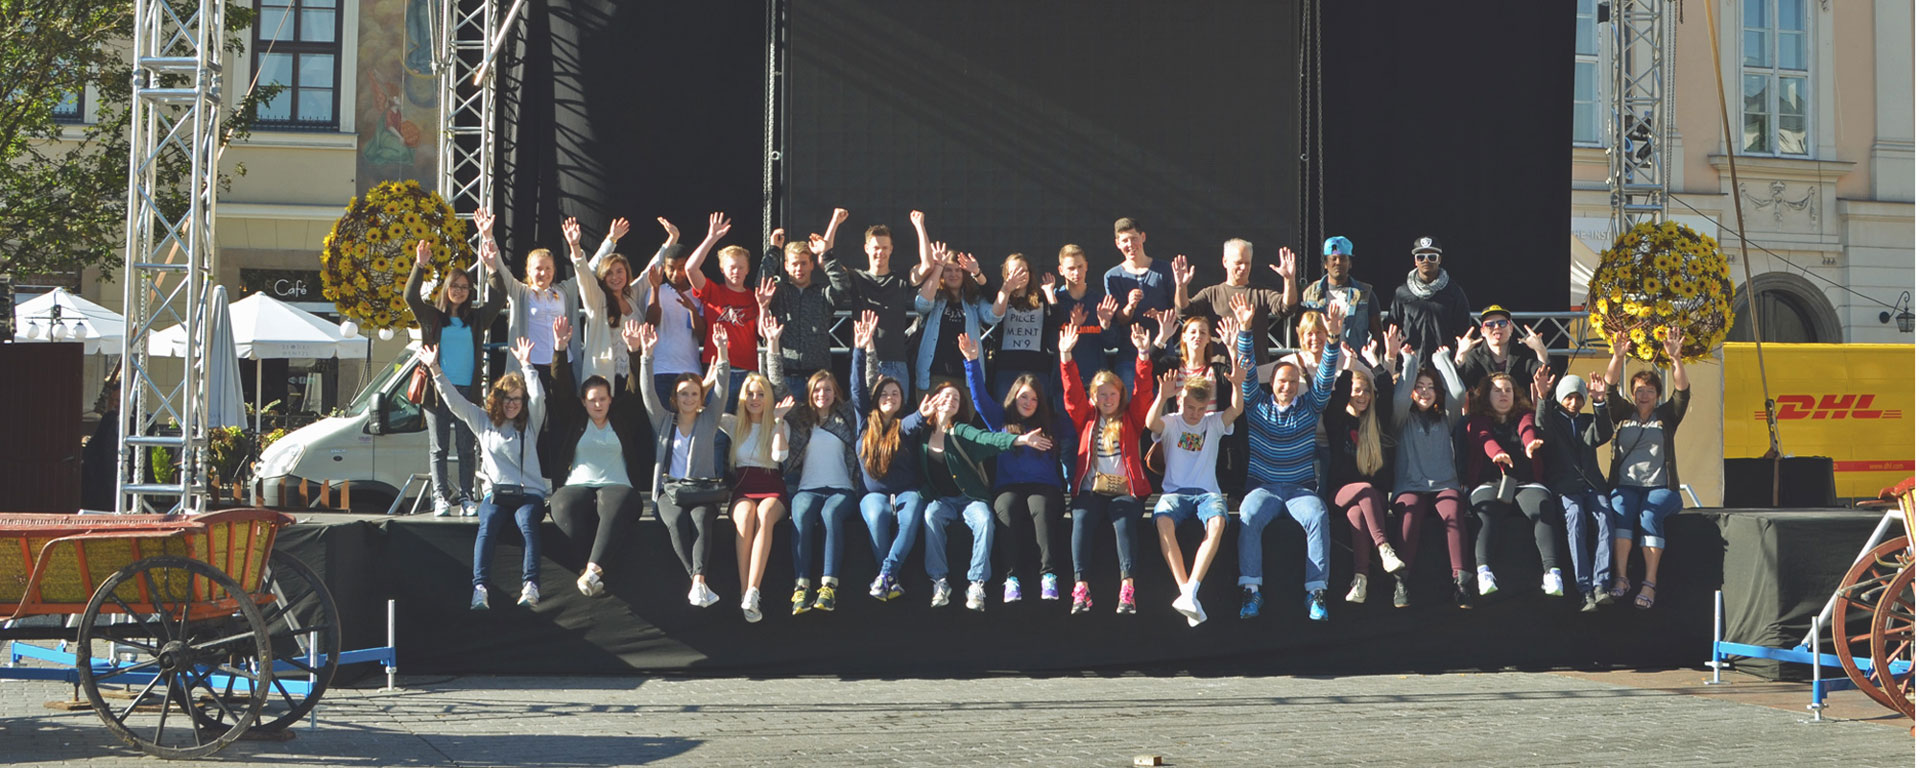 Bilde av elever og lærere på skoletur i Krakow, de sitter på kanten av en scene på gaten ute - Kristen Videregående Skole Nordland - E-sport